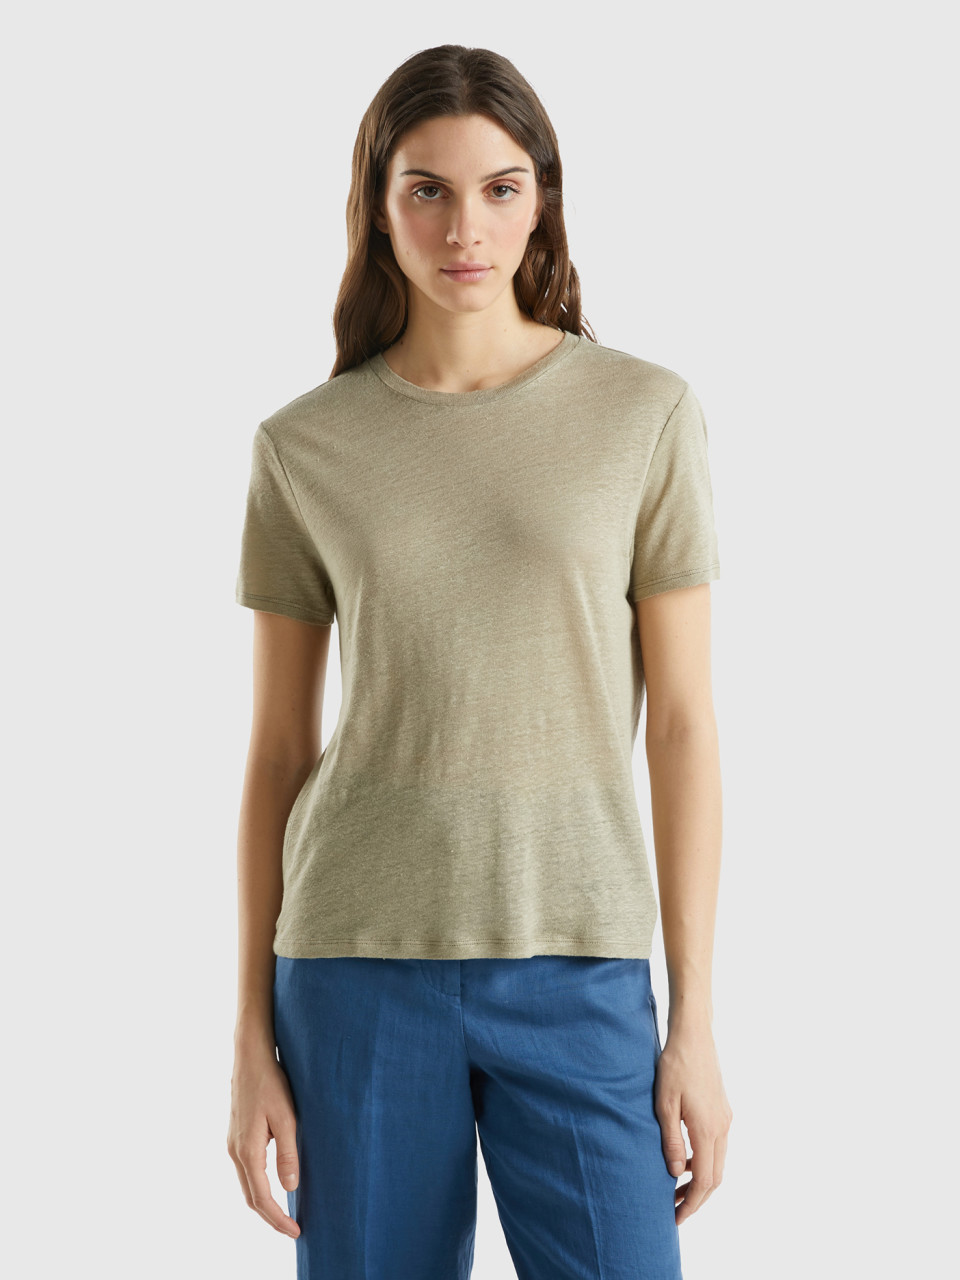 Benetton, Crew Neck T-shirt In Pure Linen, Light Green, Women